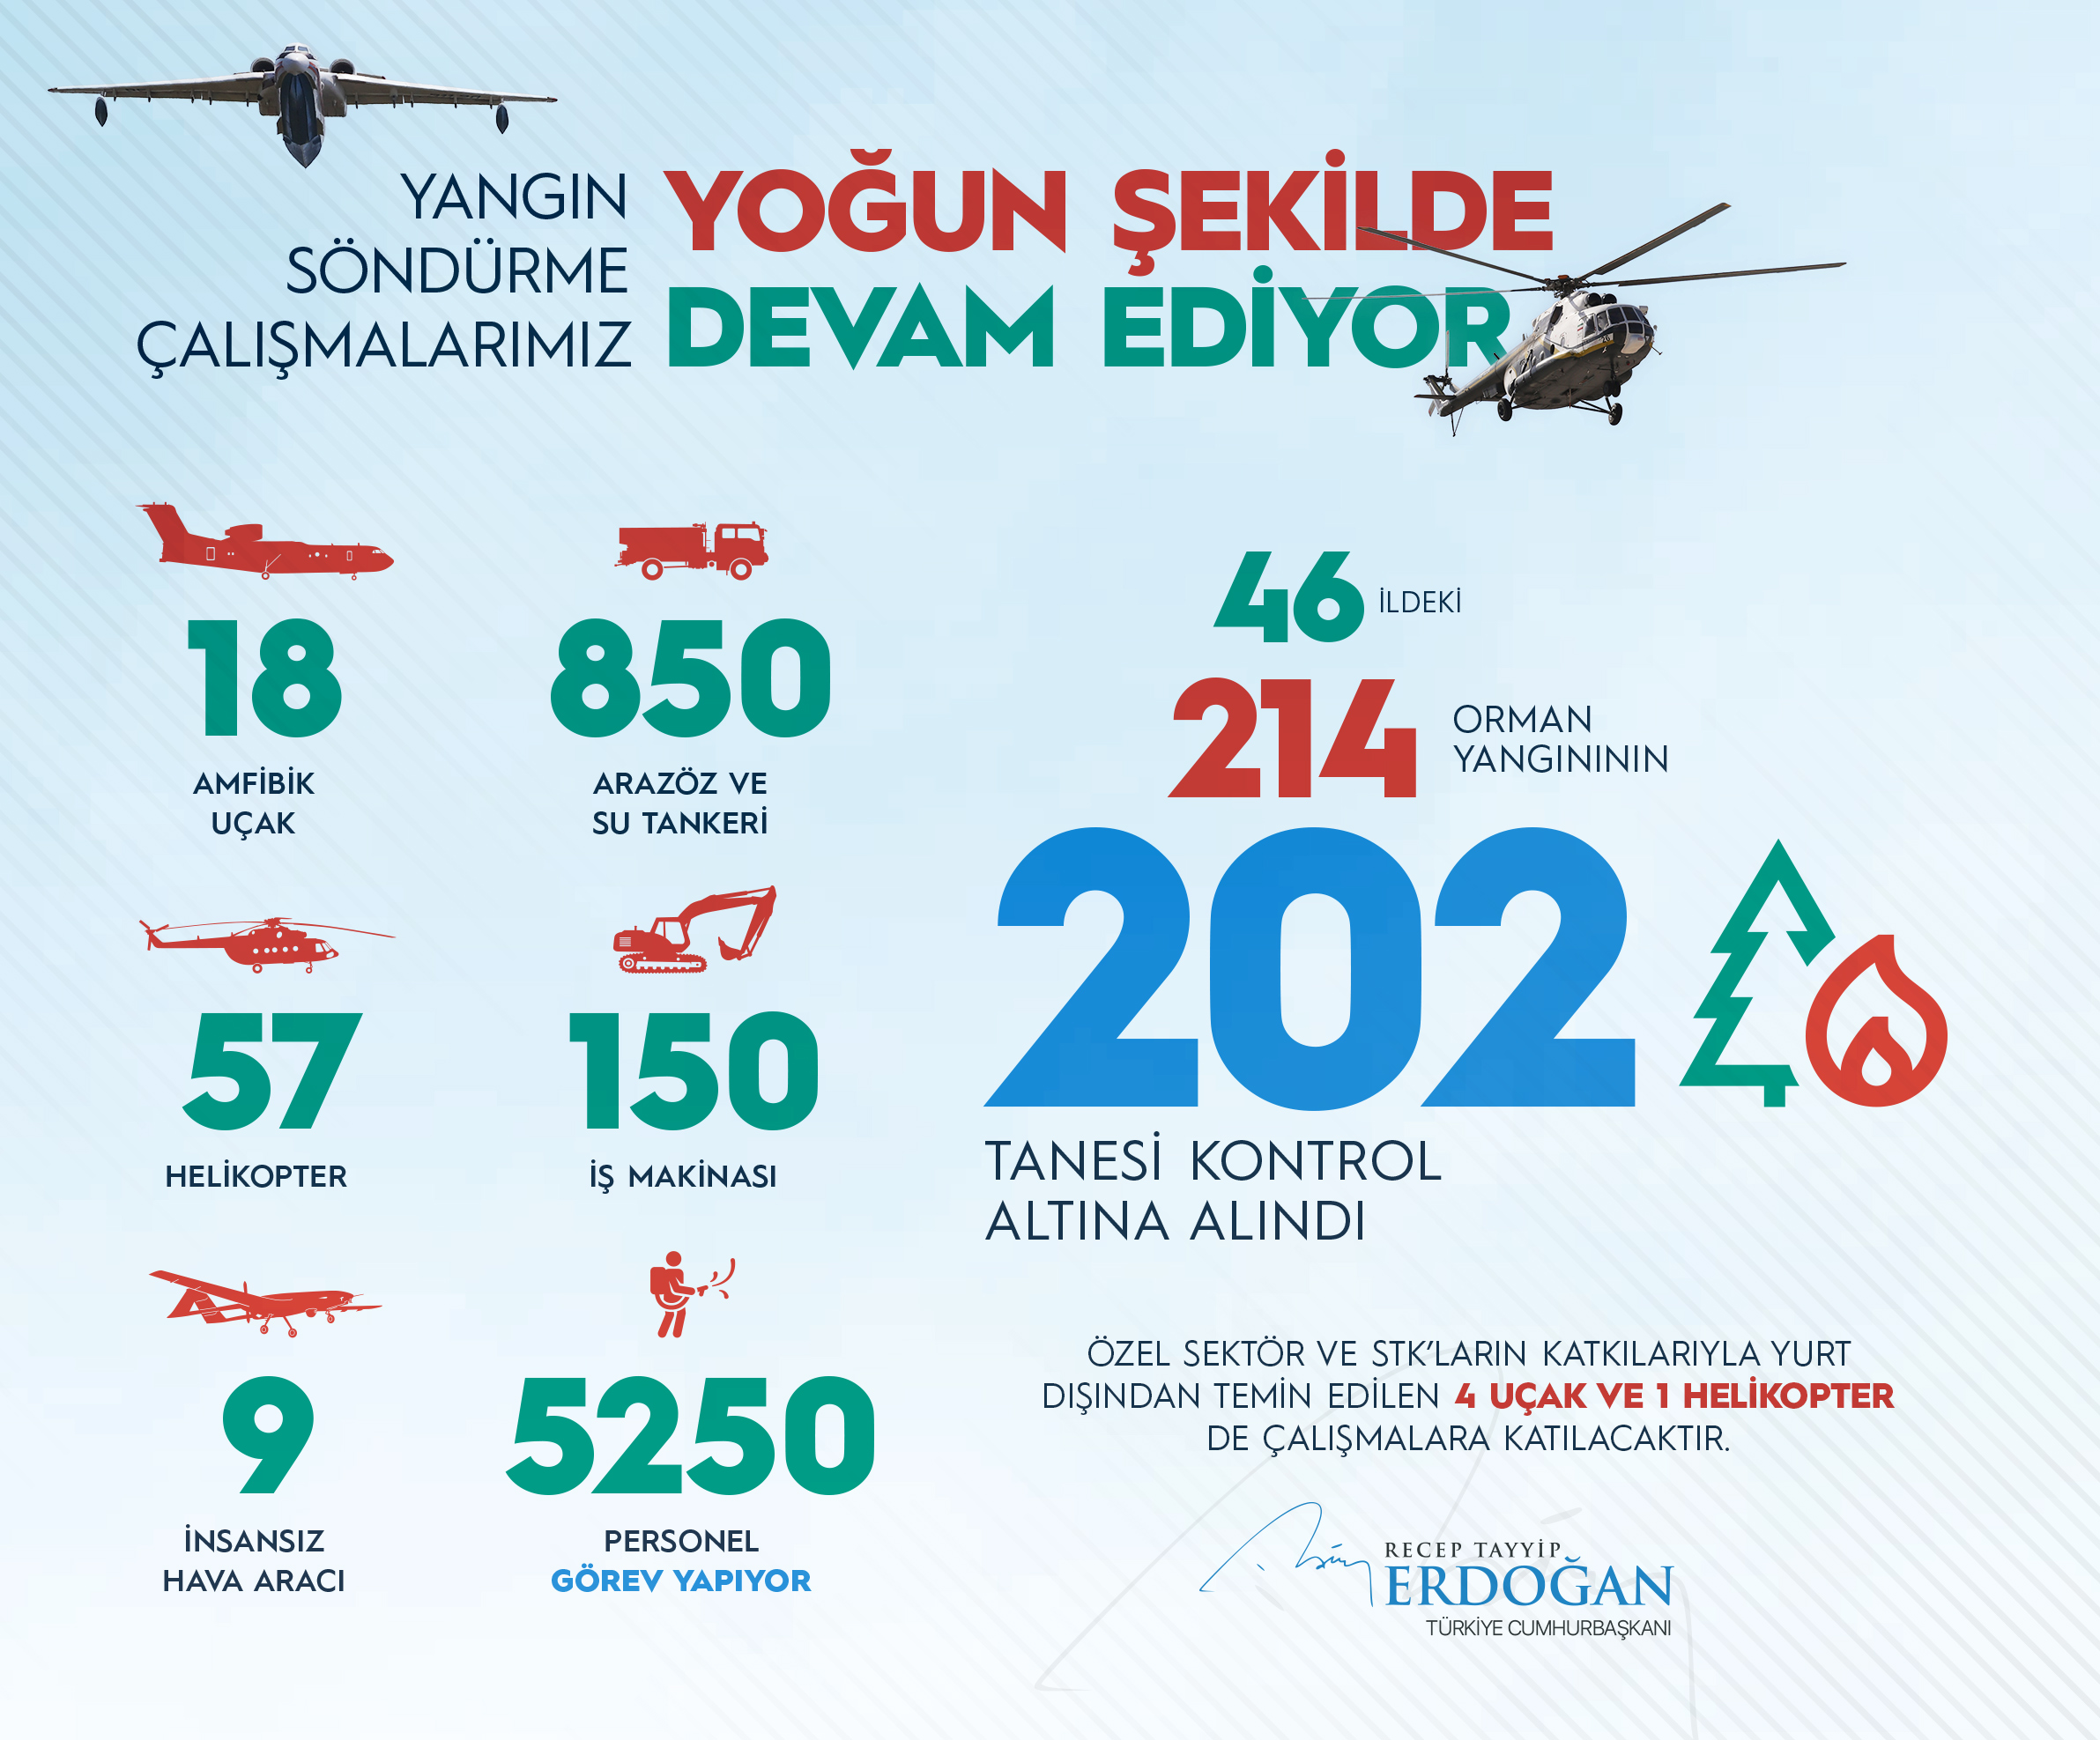 Cumhurbaşkanı Erdoğan: 46 vilayetteki 214 orman yangının 202 adedinin denetim altına alındı